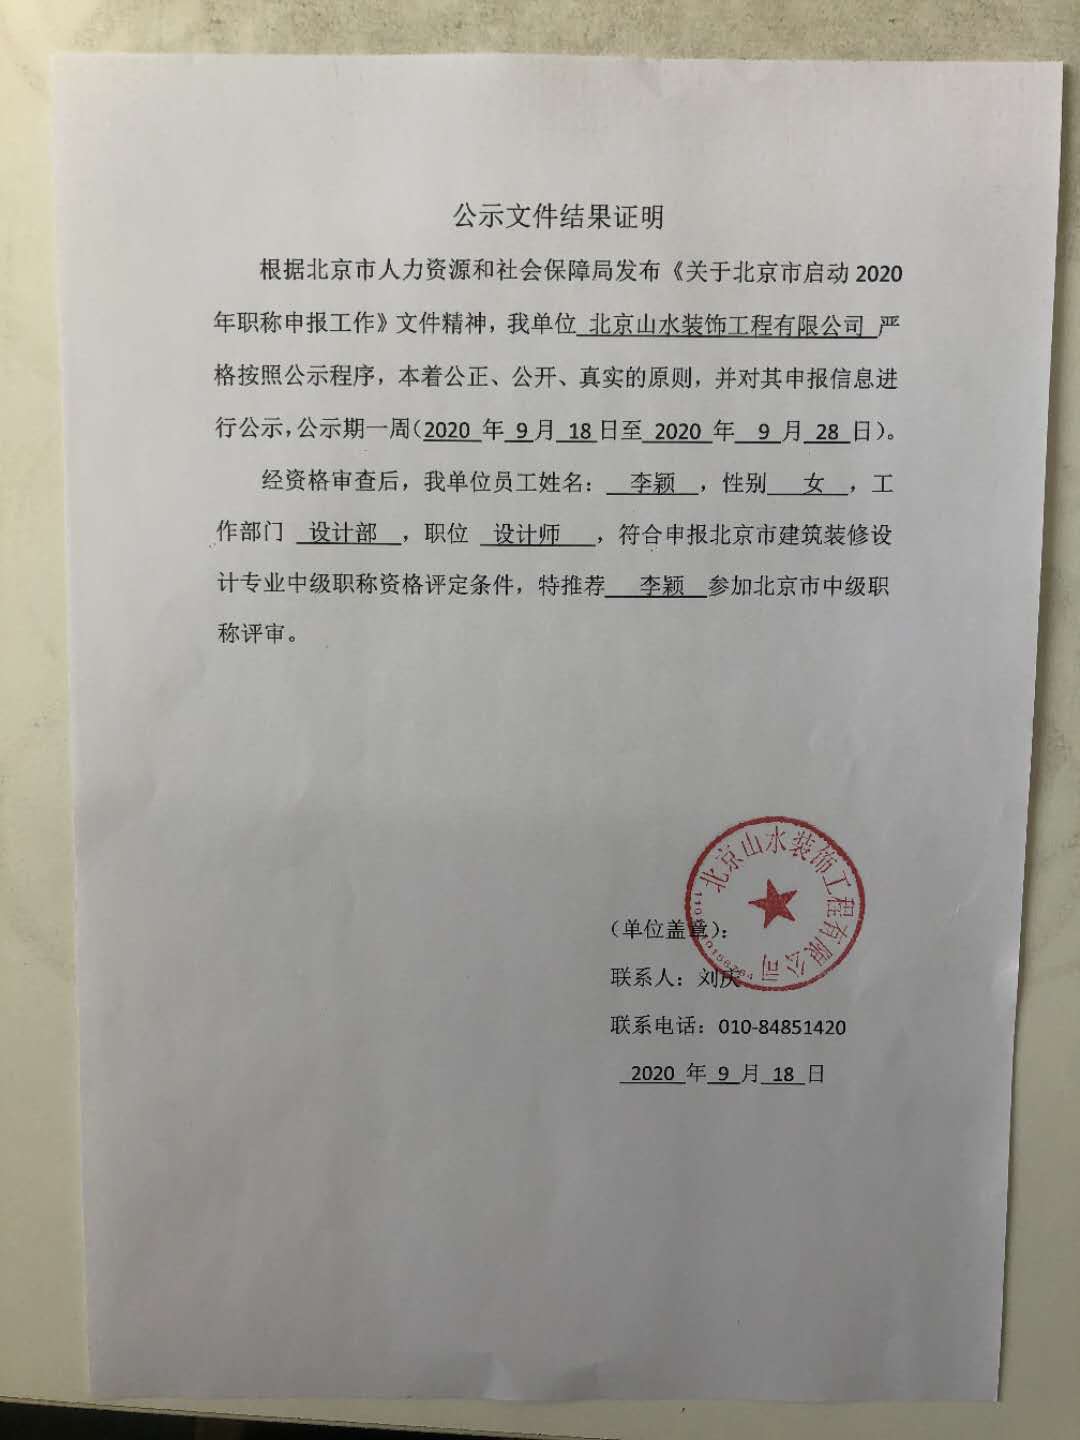 北京山水装饰工程有限公司申报2020年度中级职称公示-2020年9月18日